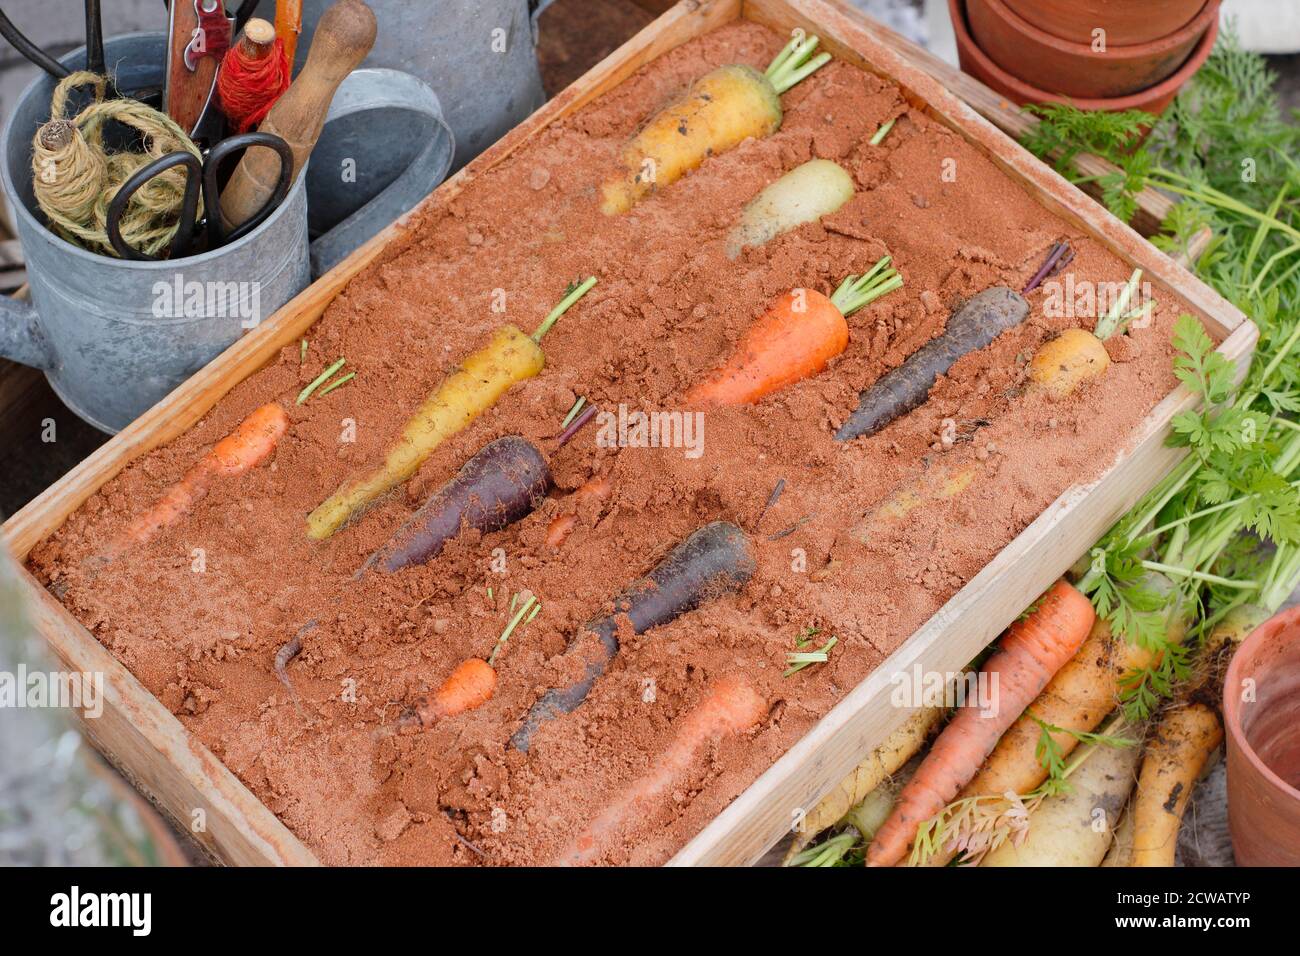 Almacenar las zanahorias arcoiris en una caja de madera de arena húmeda - capa superior de arena omitida para mostrar verduras. Foto de stock